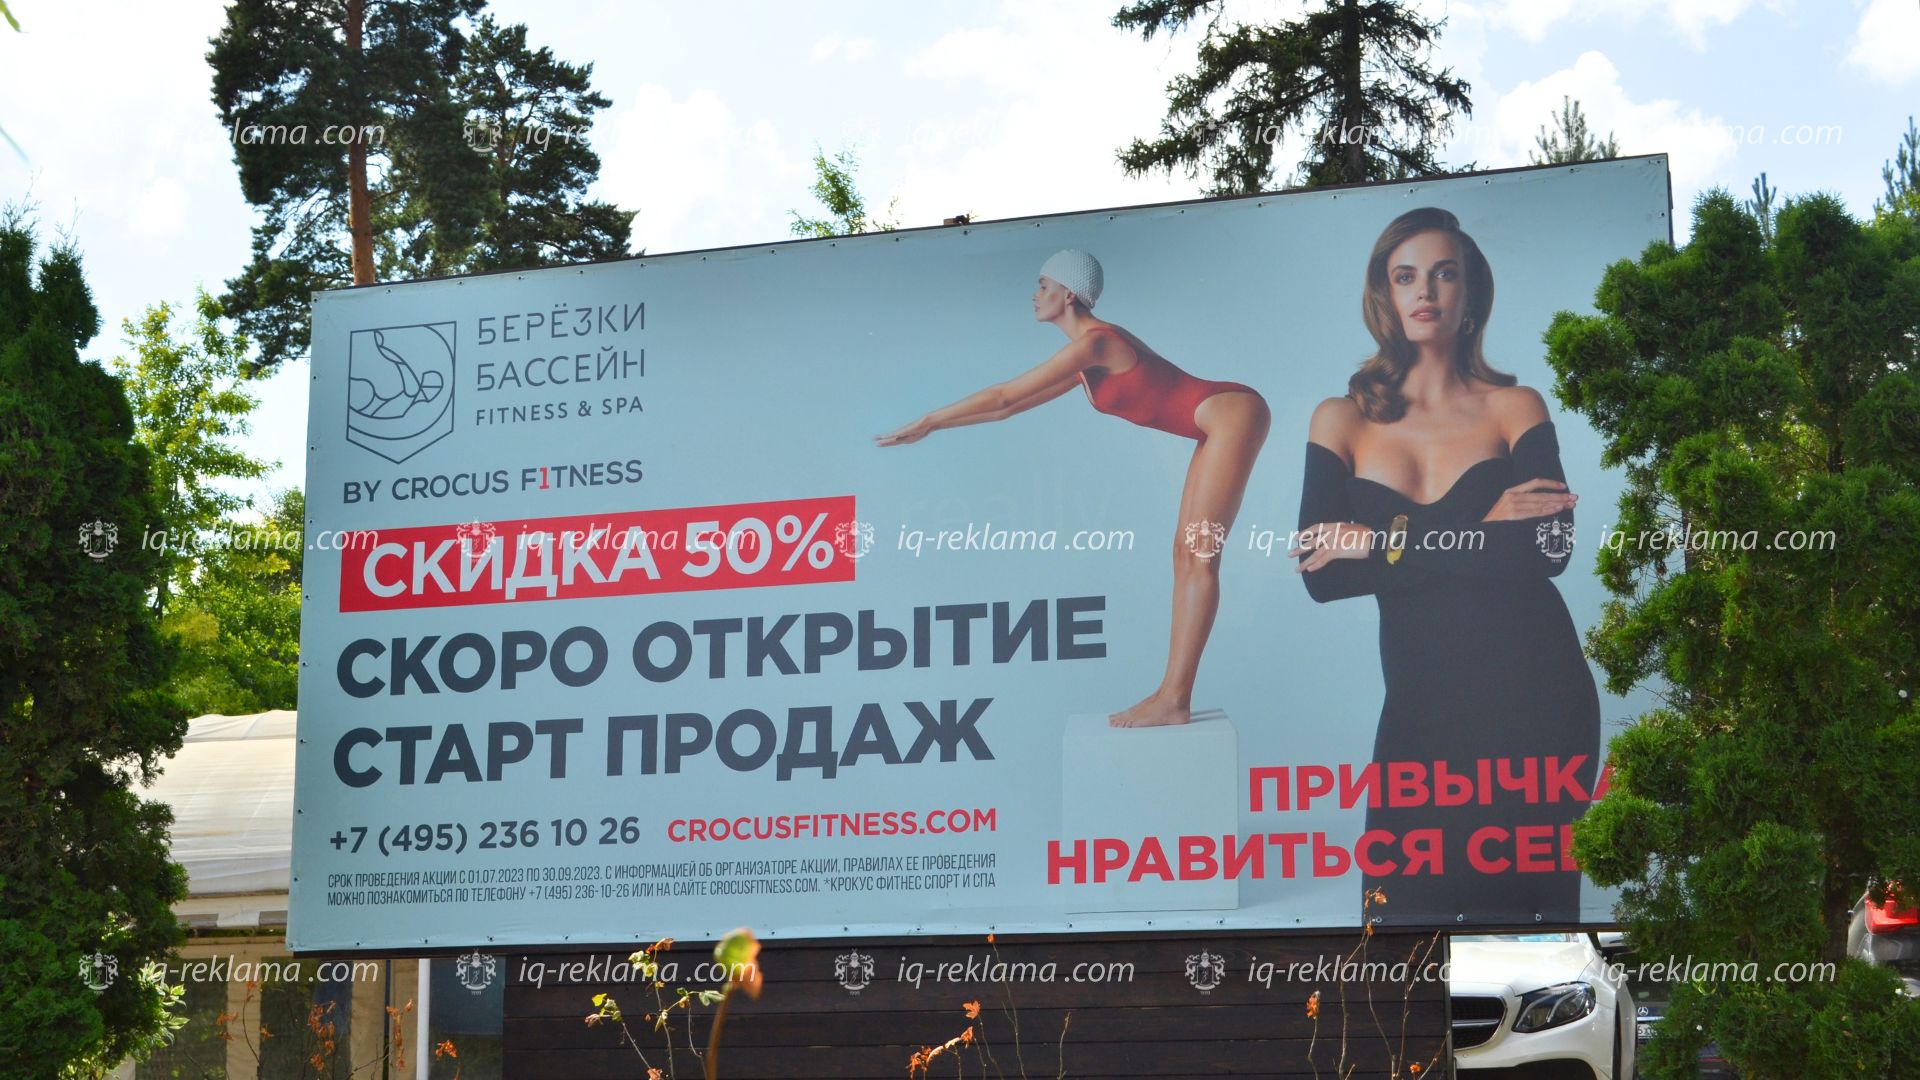 Наружная реклама на билбордах в местах элитного отдыха Москвы сети фитнес-клубов Crocus Fitness